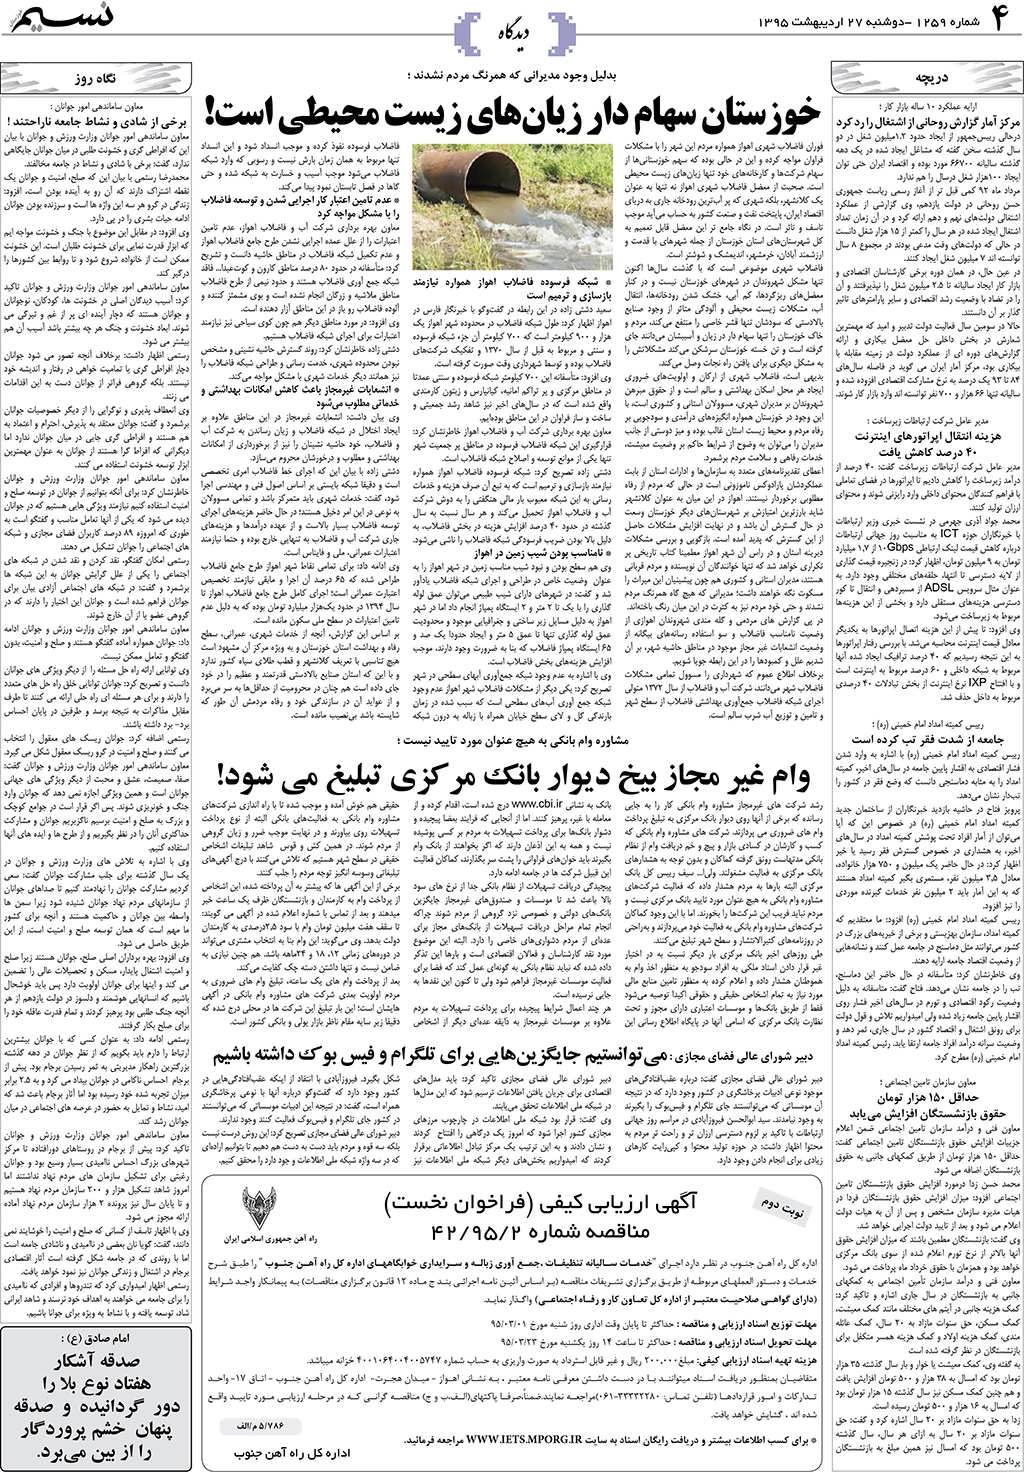 صفحه دیدگاه روزنامه نسیم شماره 1259